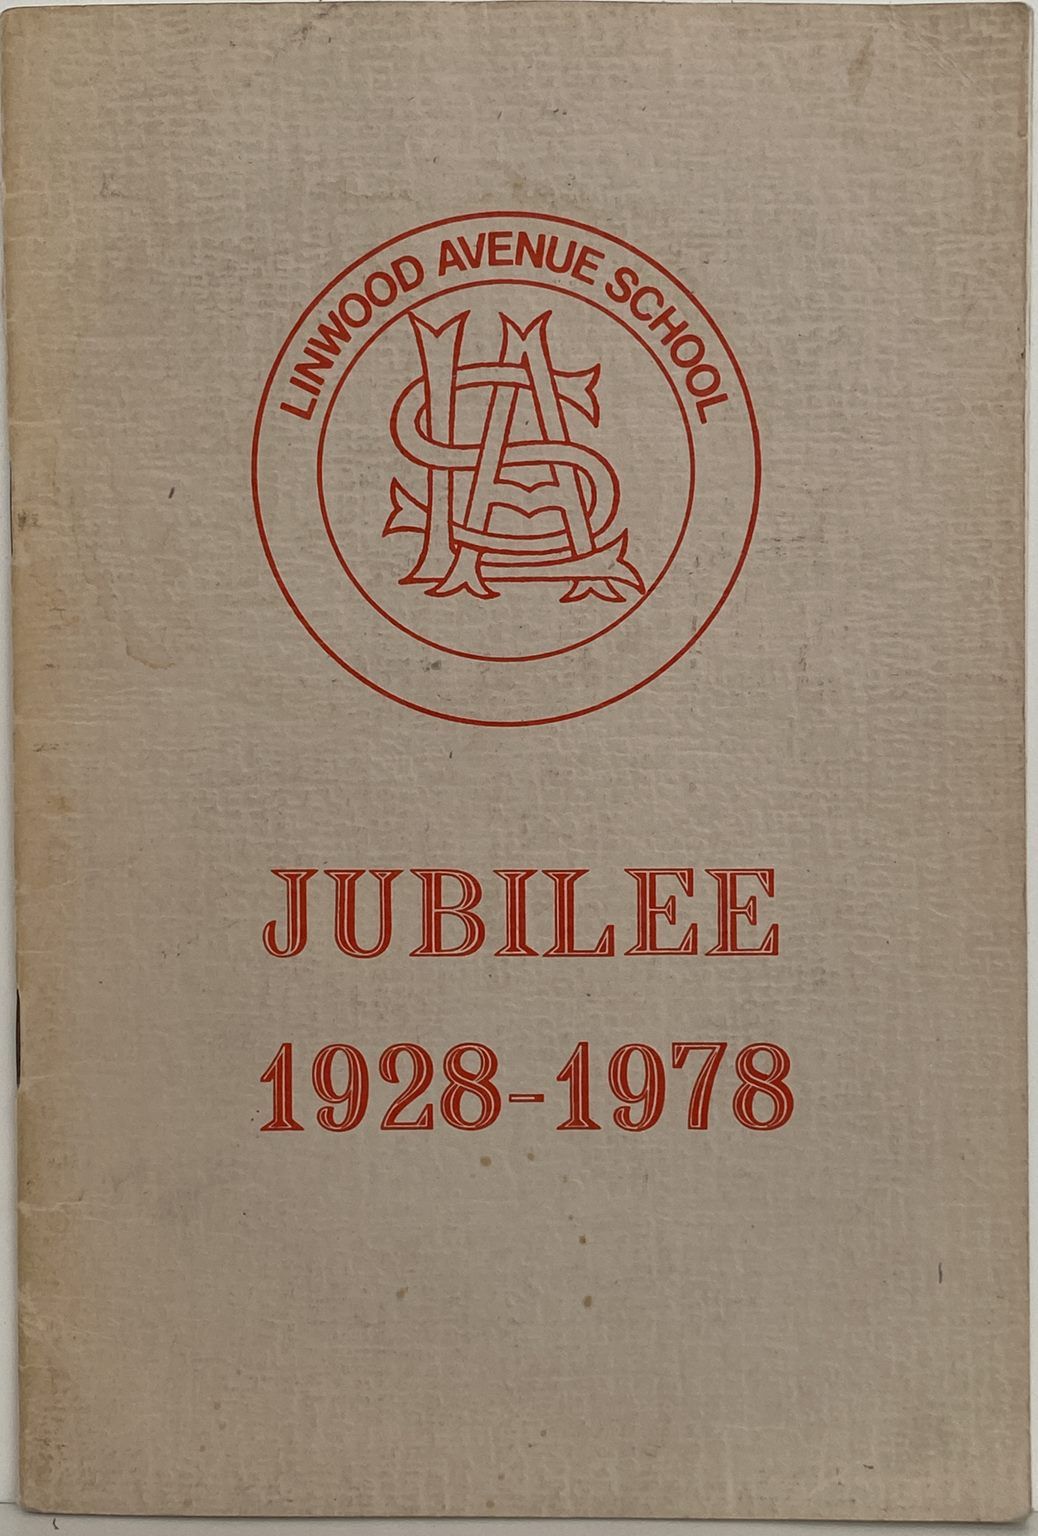 LINWOOD AVENUE SCHOOL: Jubilee 1928-1978